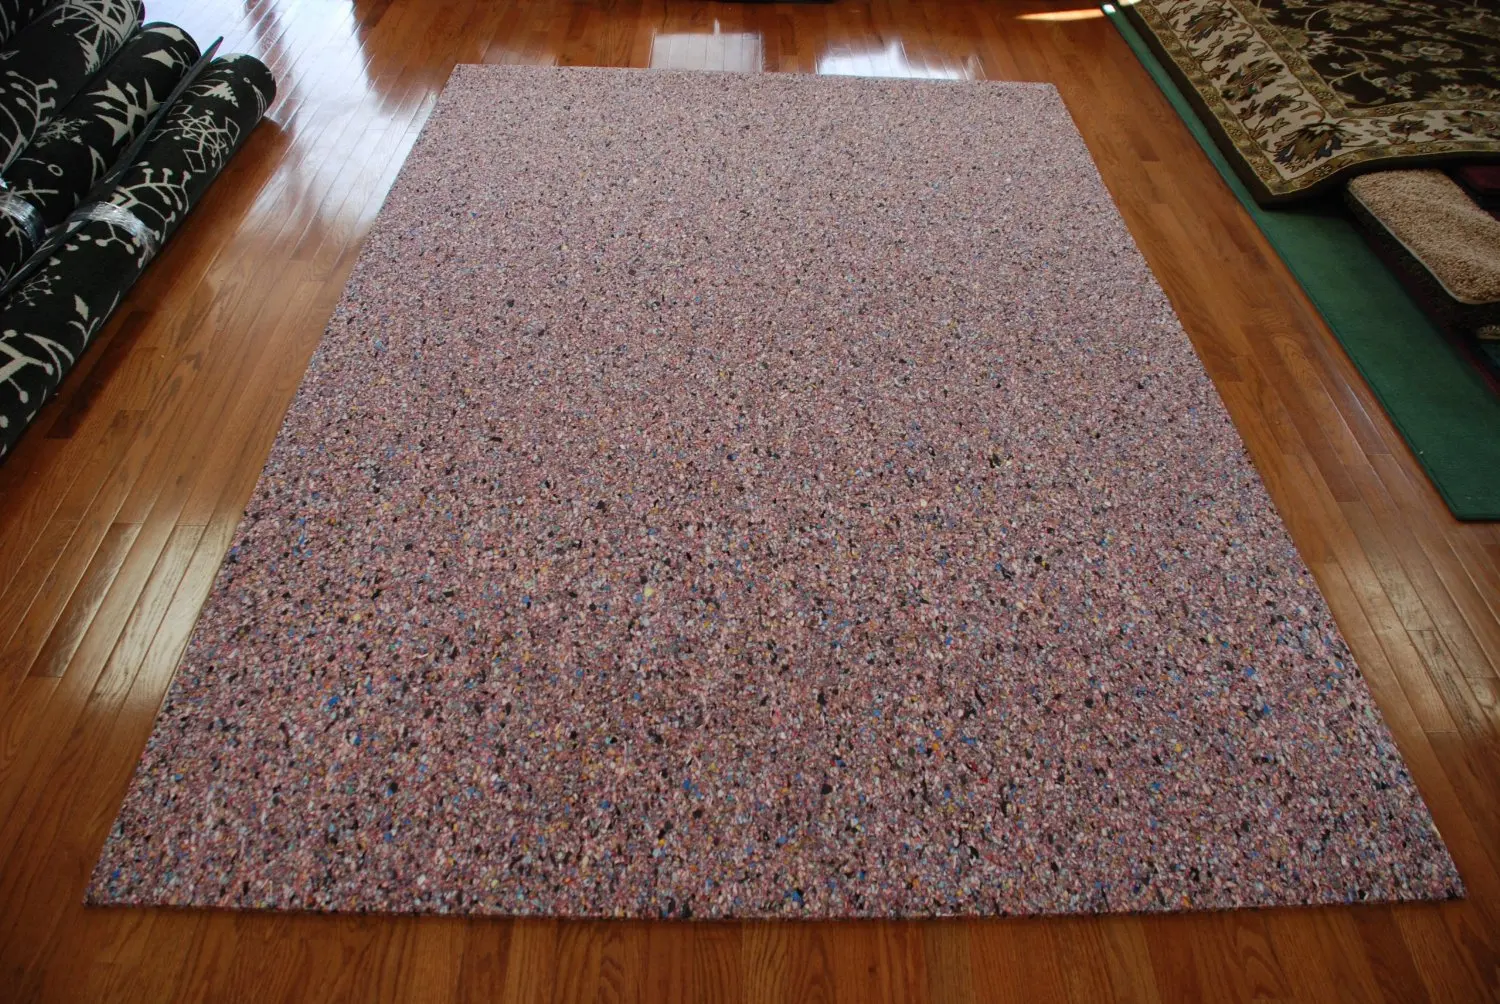 Cheap 6 Lb Carpet Pad, find 6 Lb Carpet Pad deals on line at Alibaba.com